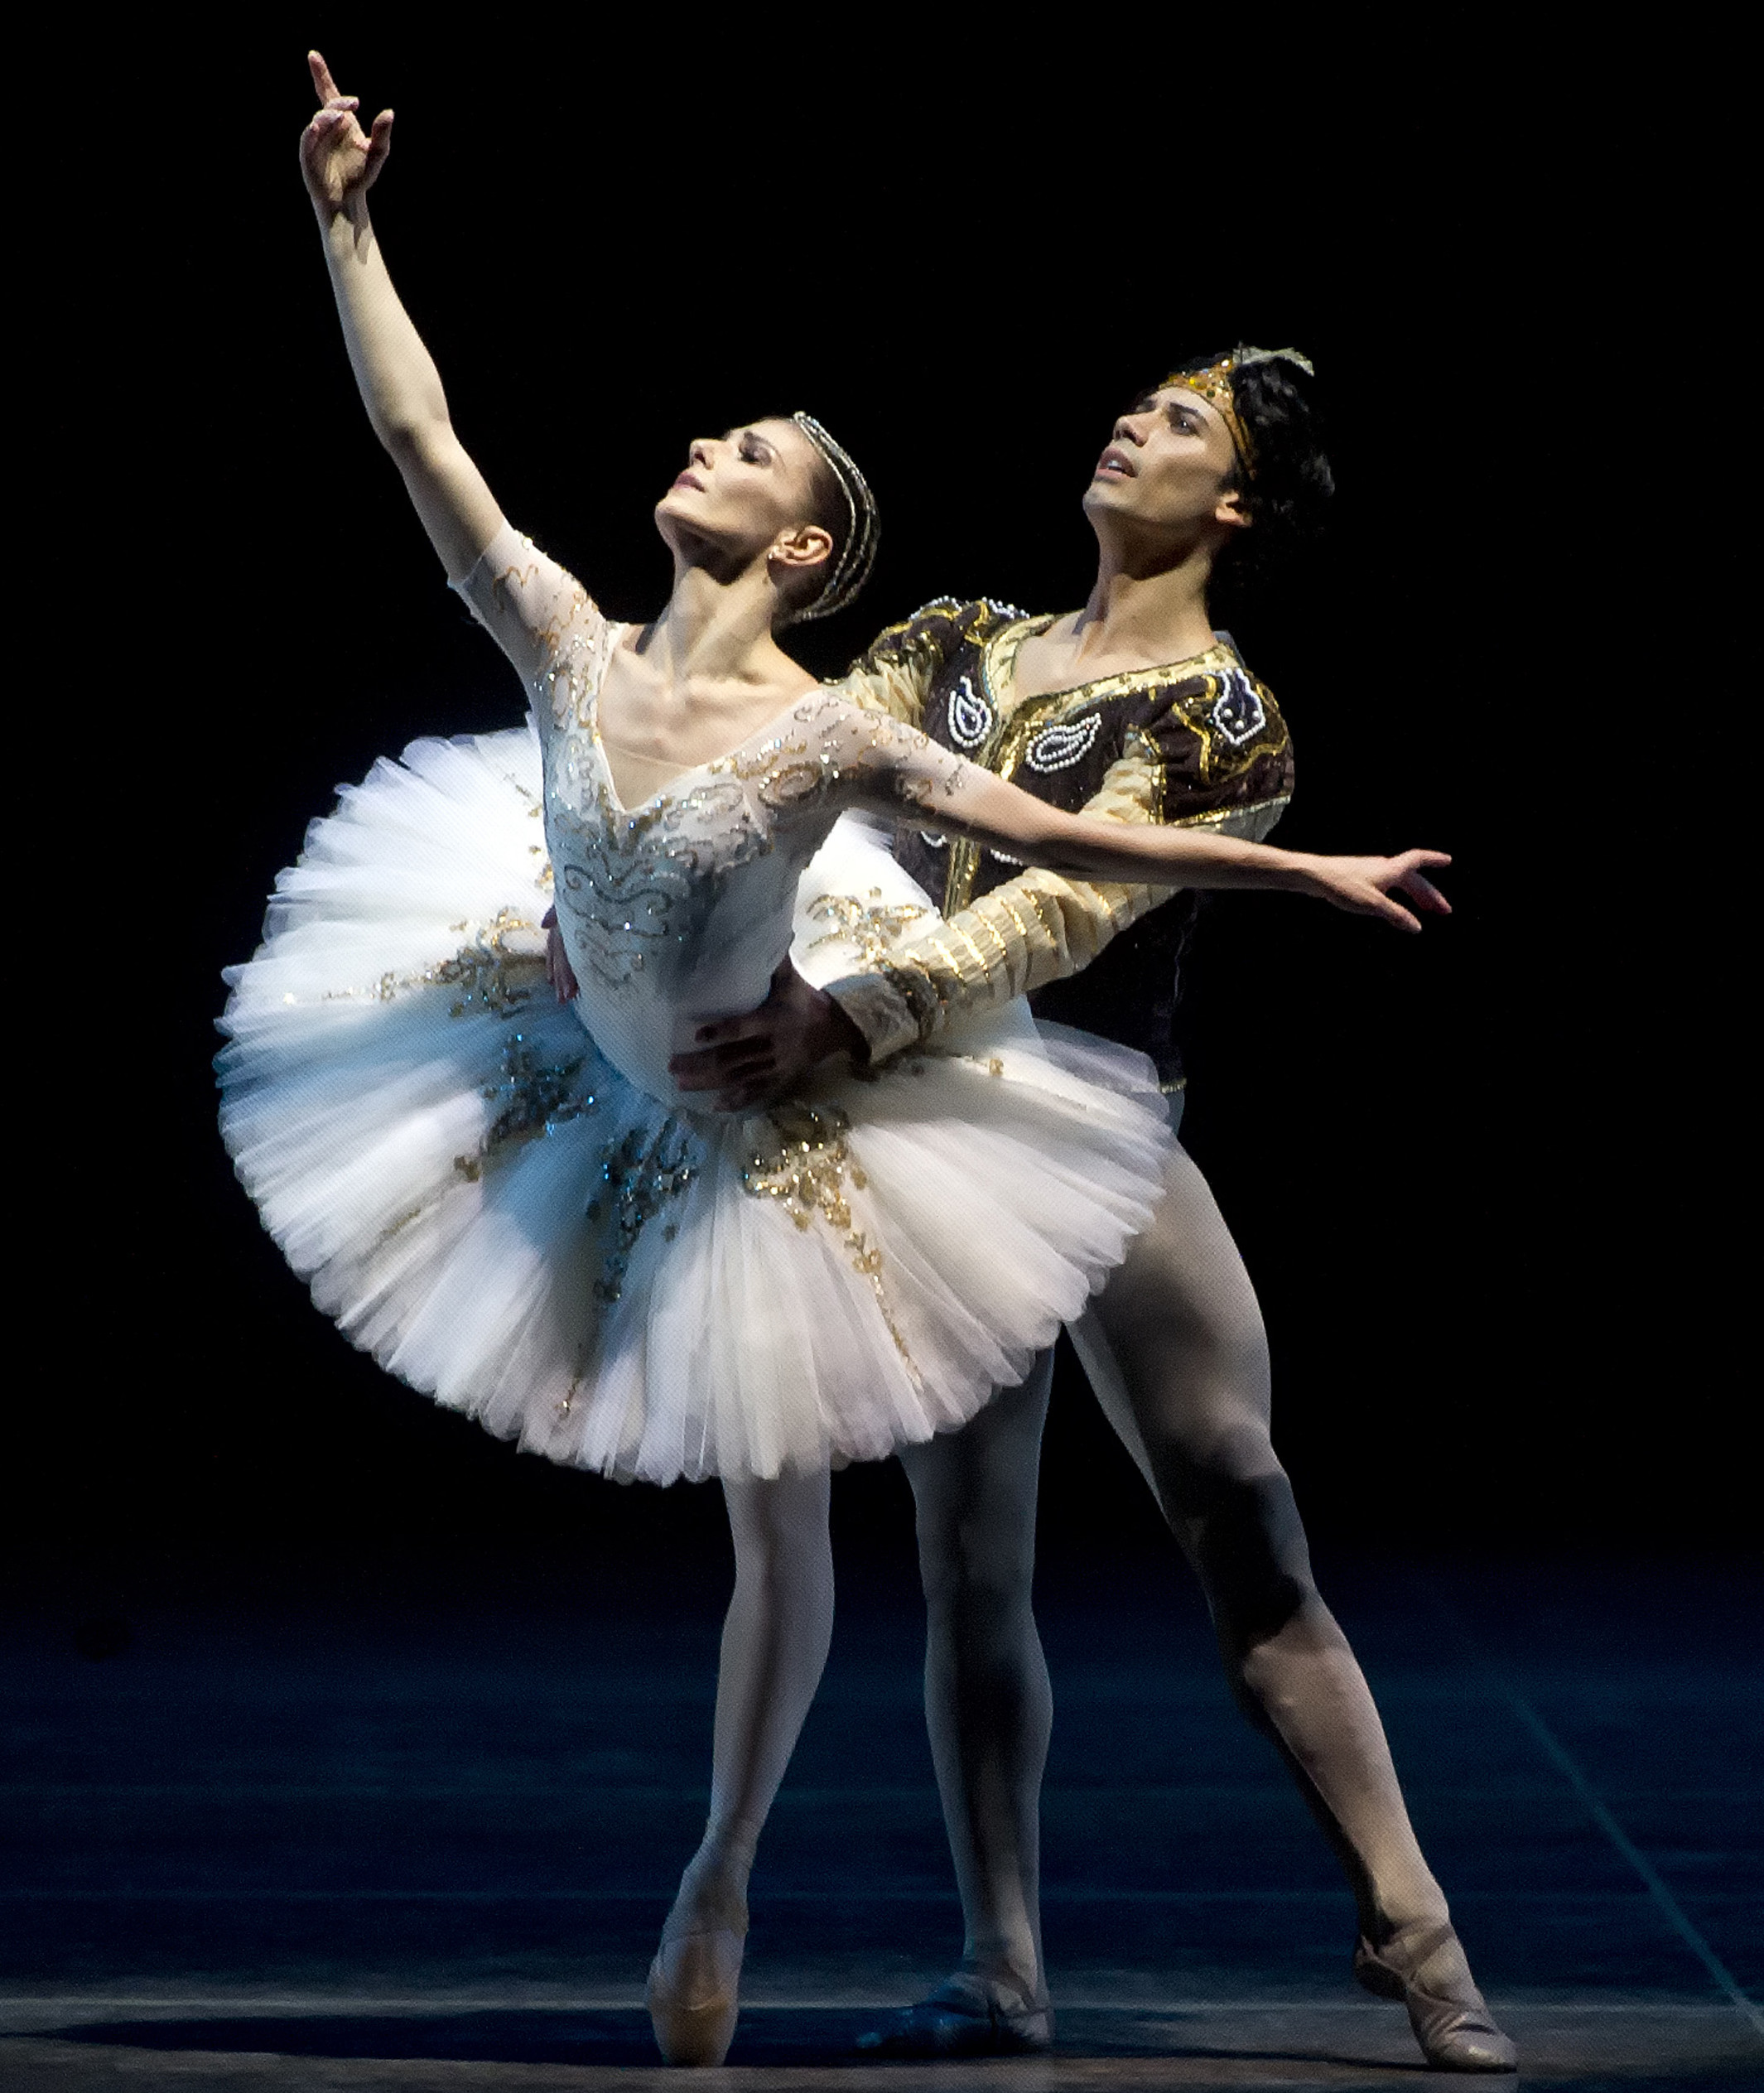 "La Bayadere", con la bailarina invitada Alina Cojocaru, como Nikiya, que es traicionada por su amante Solor, Herman Cornejo. Foto: Gene Schiavone. Gentileza ABT.